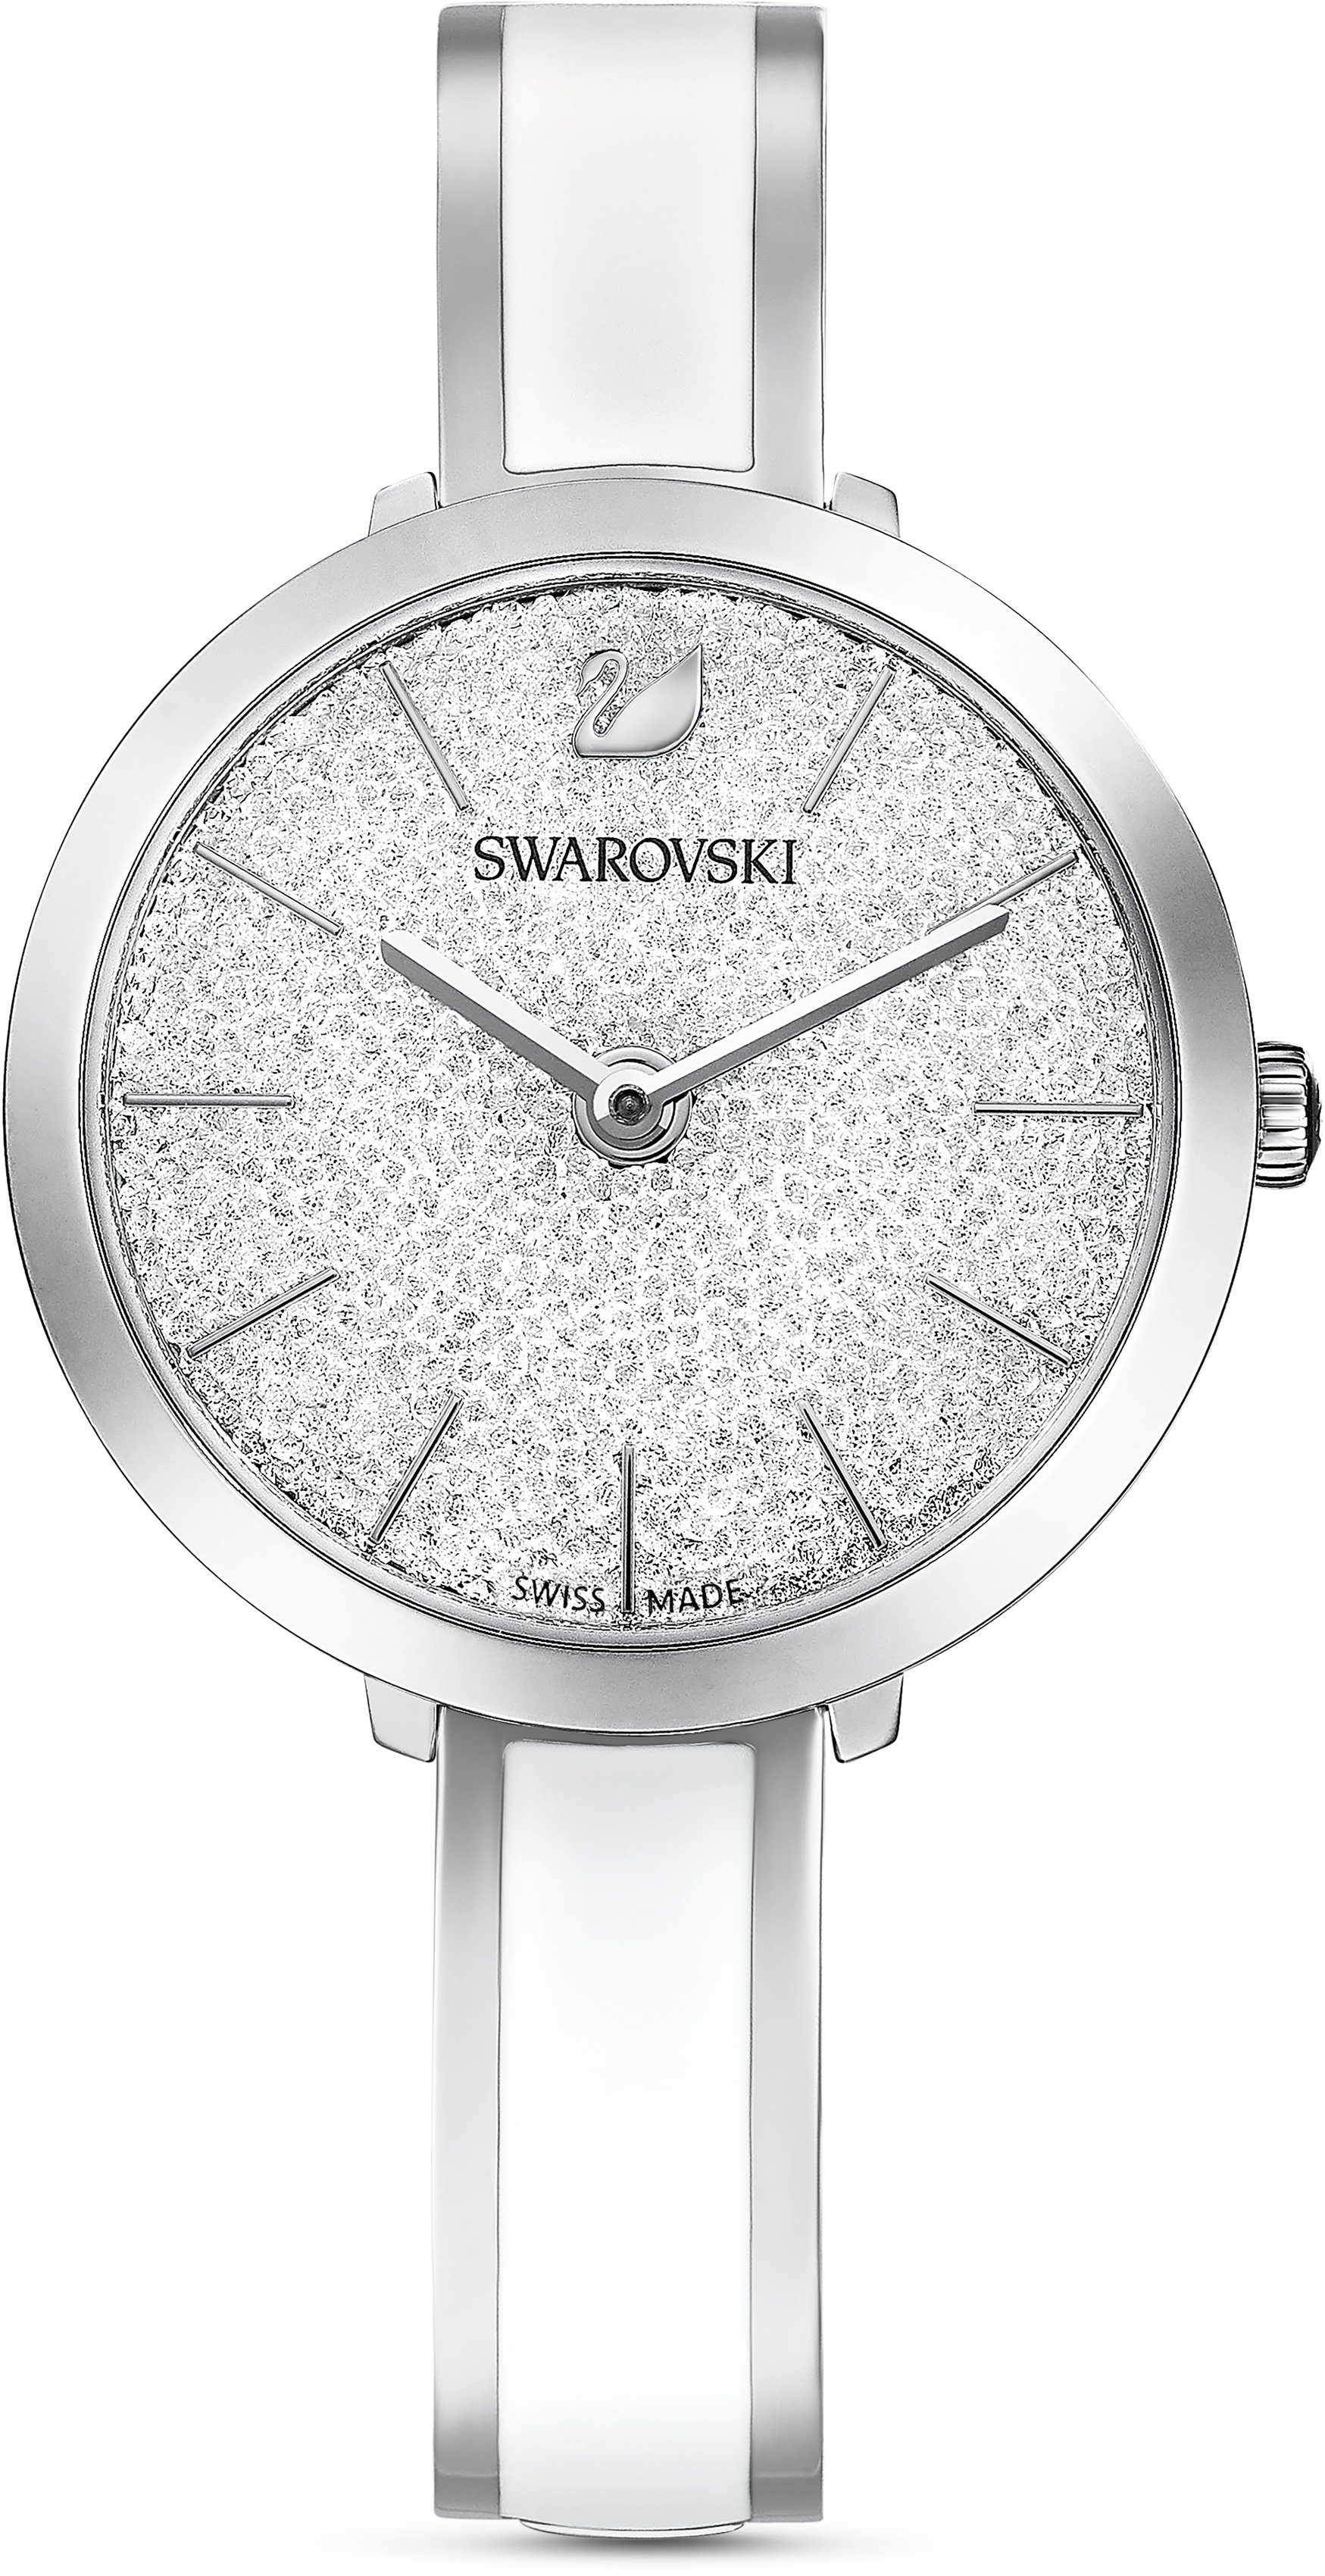 Swarovski Schweizer Uhr Crystalline Delight, 5580537 silber | Quarzuhren